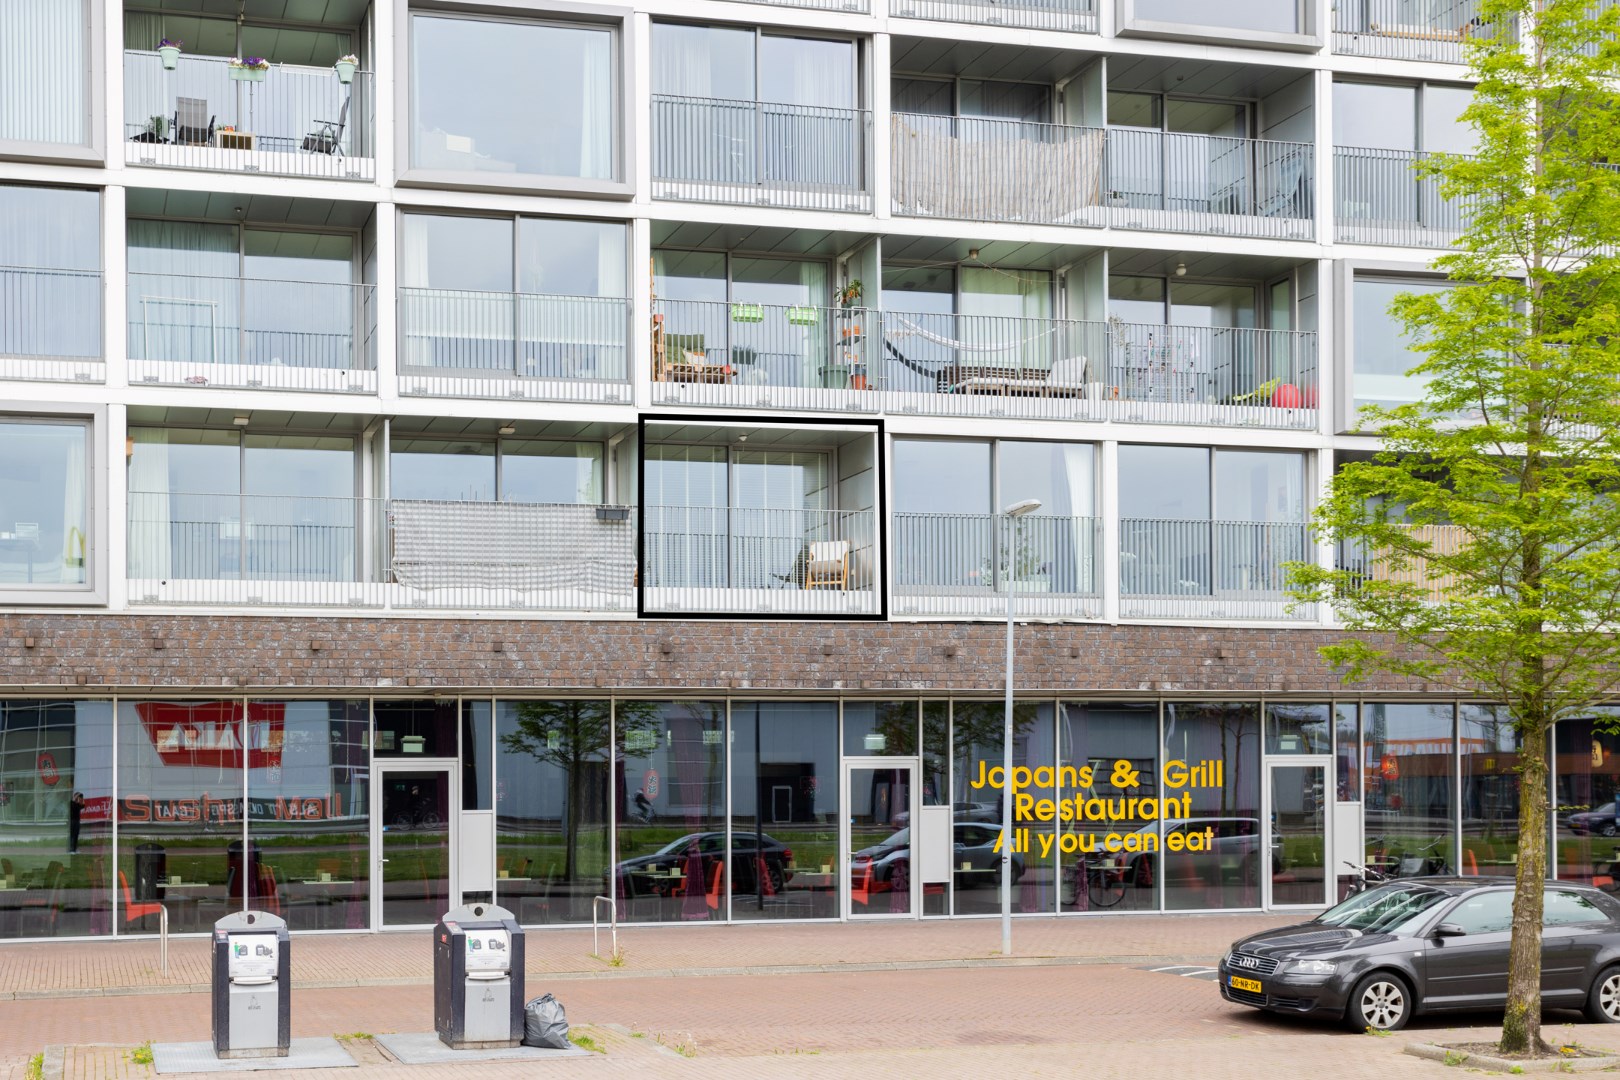 Prachtig appartement gelegen op loopafstand van de binnenstad van Groningen! 